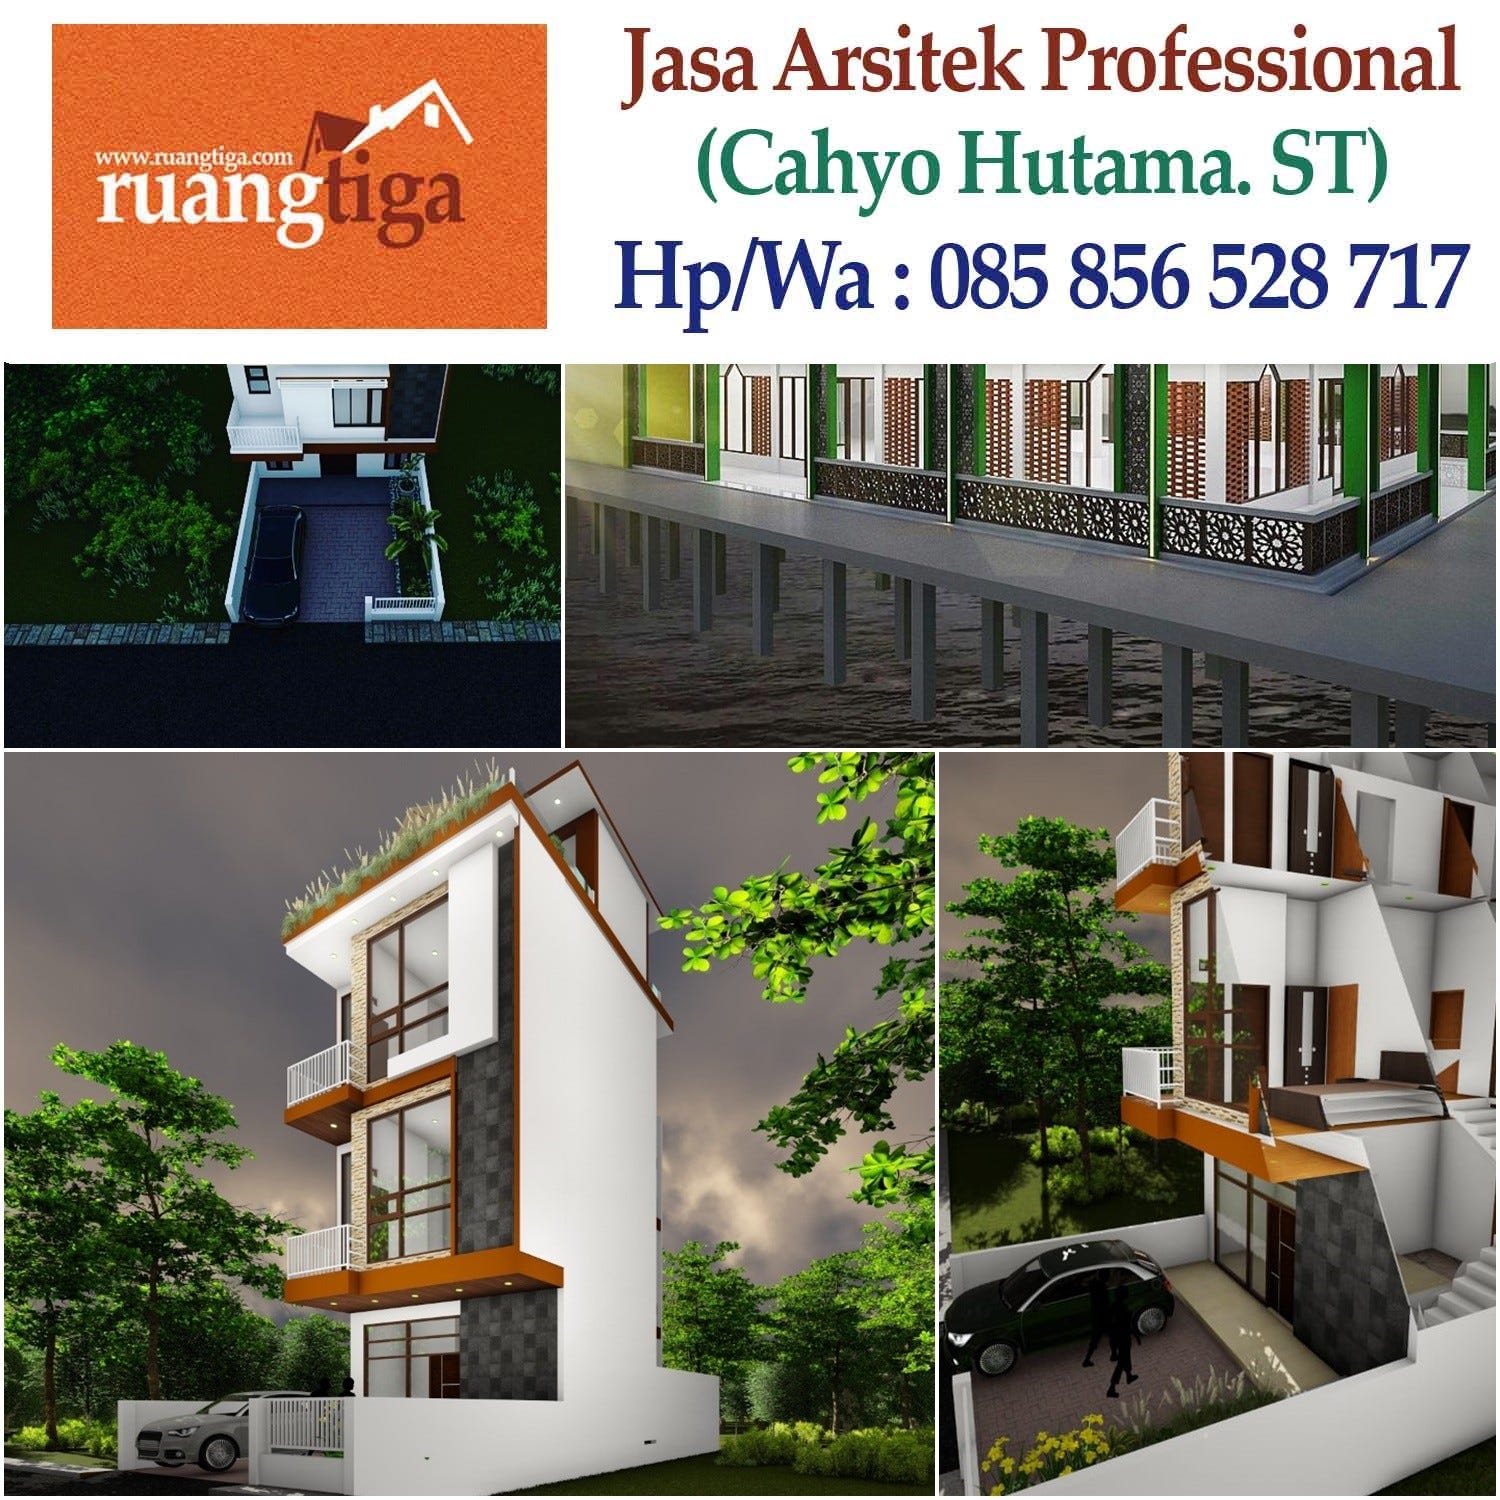 Jasa G085856528717 Jasa Desain Rumah Elegan Jasa Arsitek Rumah